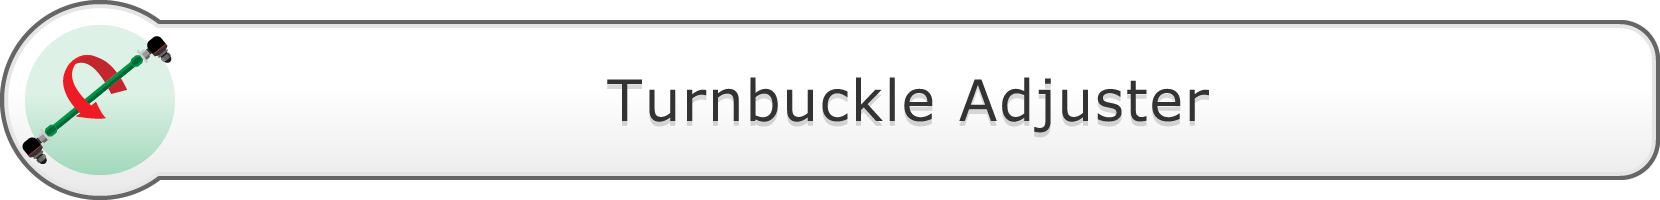 Turnbuckle Adjuster